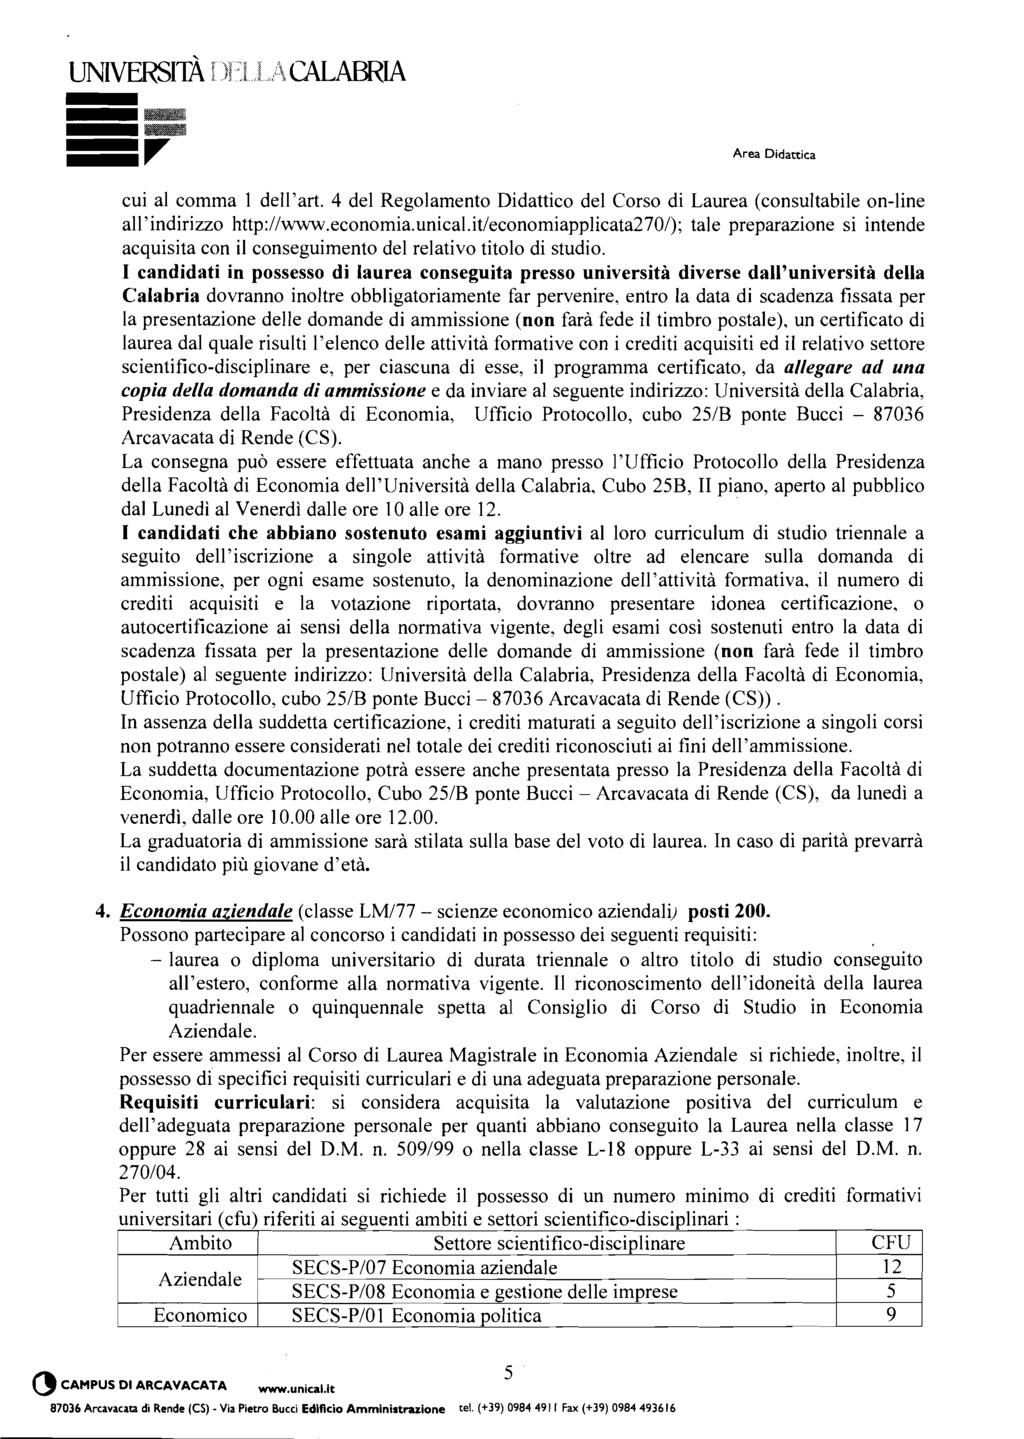 cui al comma 1 dell'art. 4 del Regolamento Didattico del Corso di Laurea (consultabile on-line all'indirizzo http://www.economia.unical.